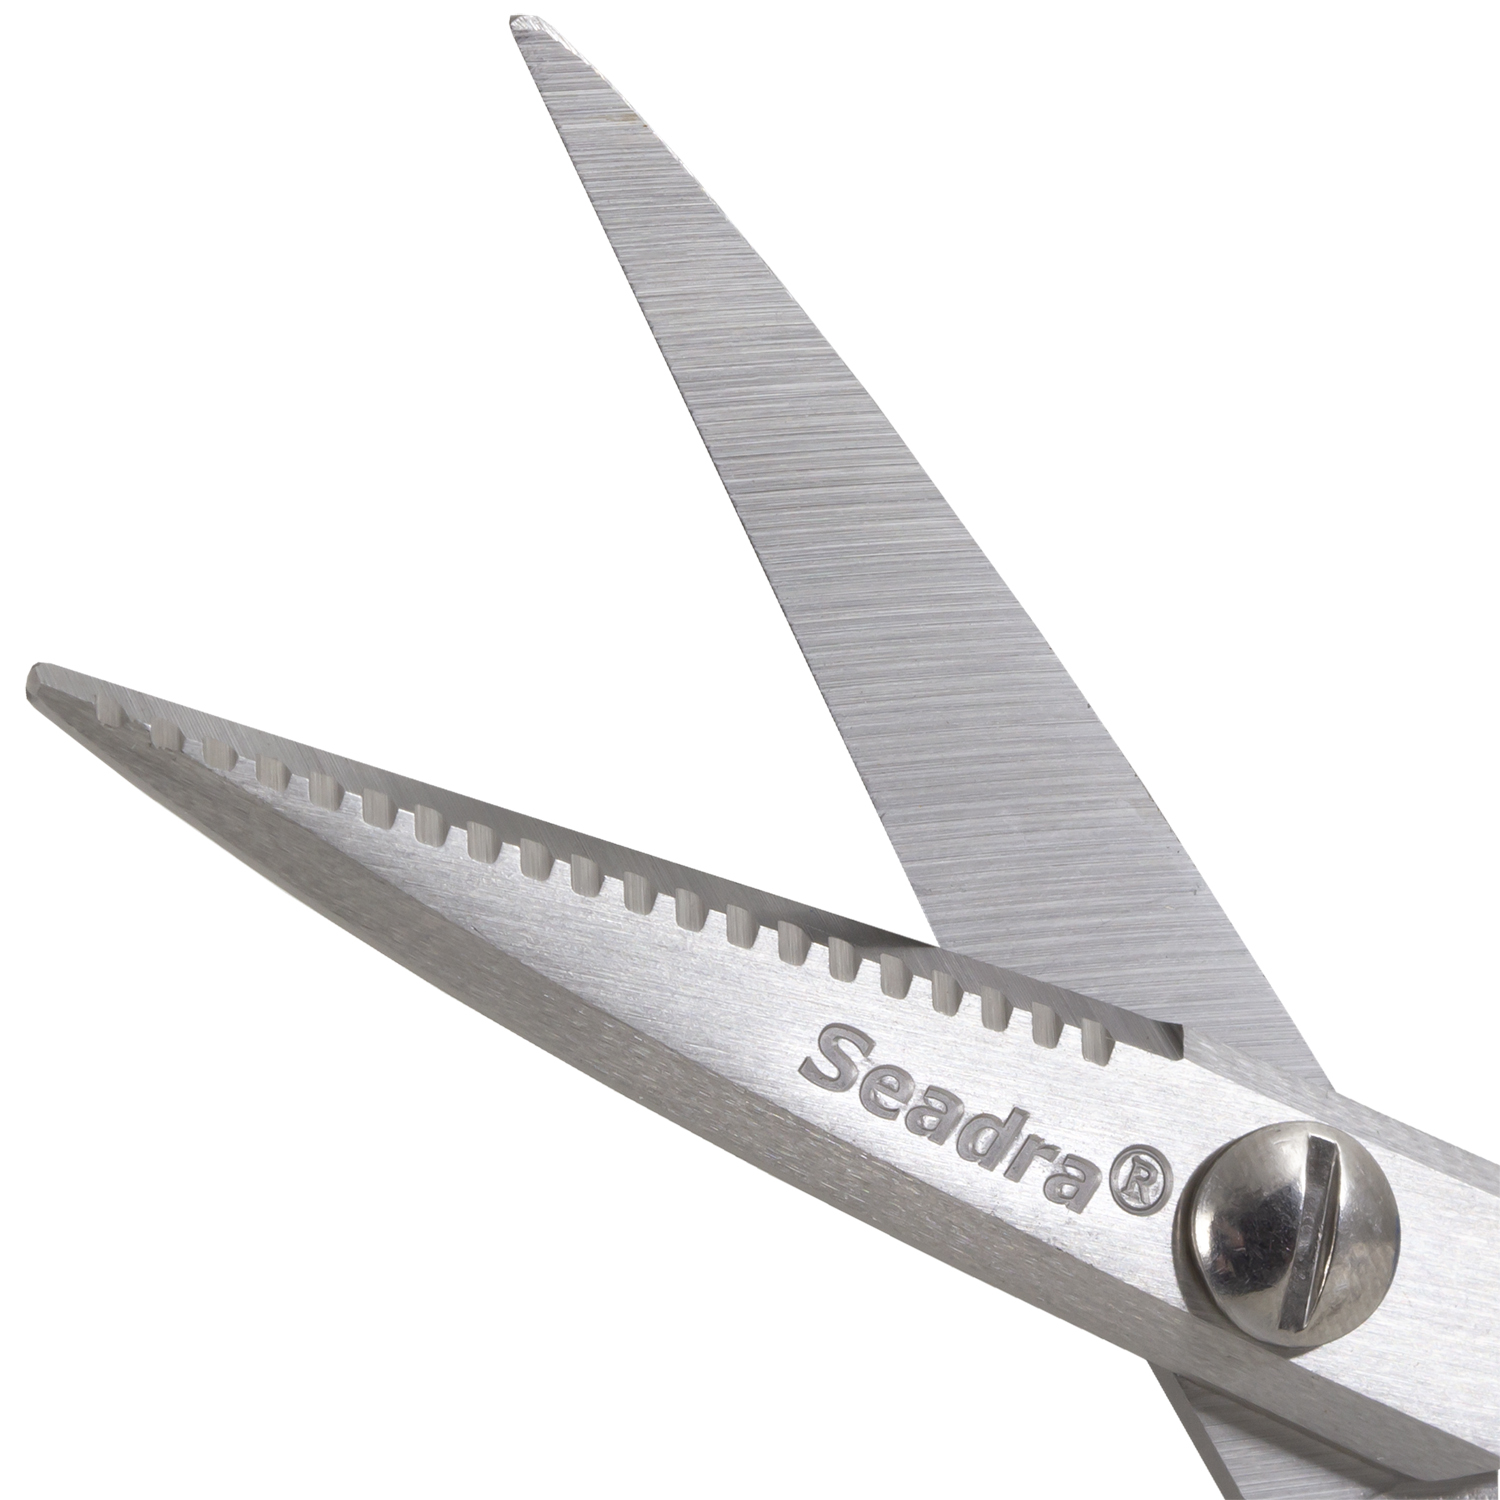 seadra-super-bait-scissors-v2-2